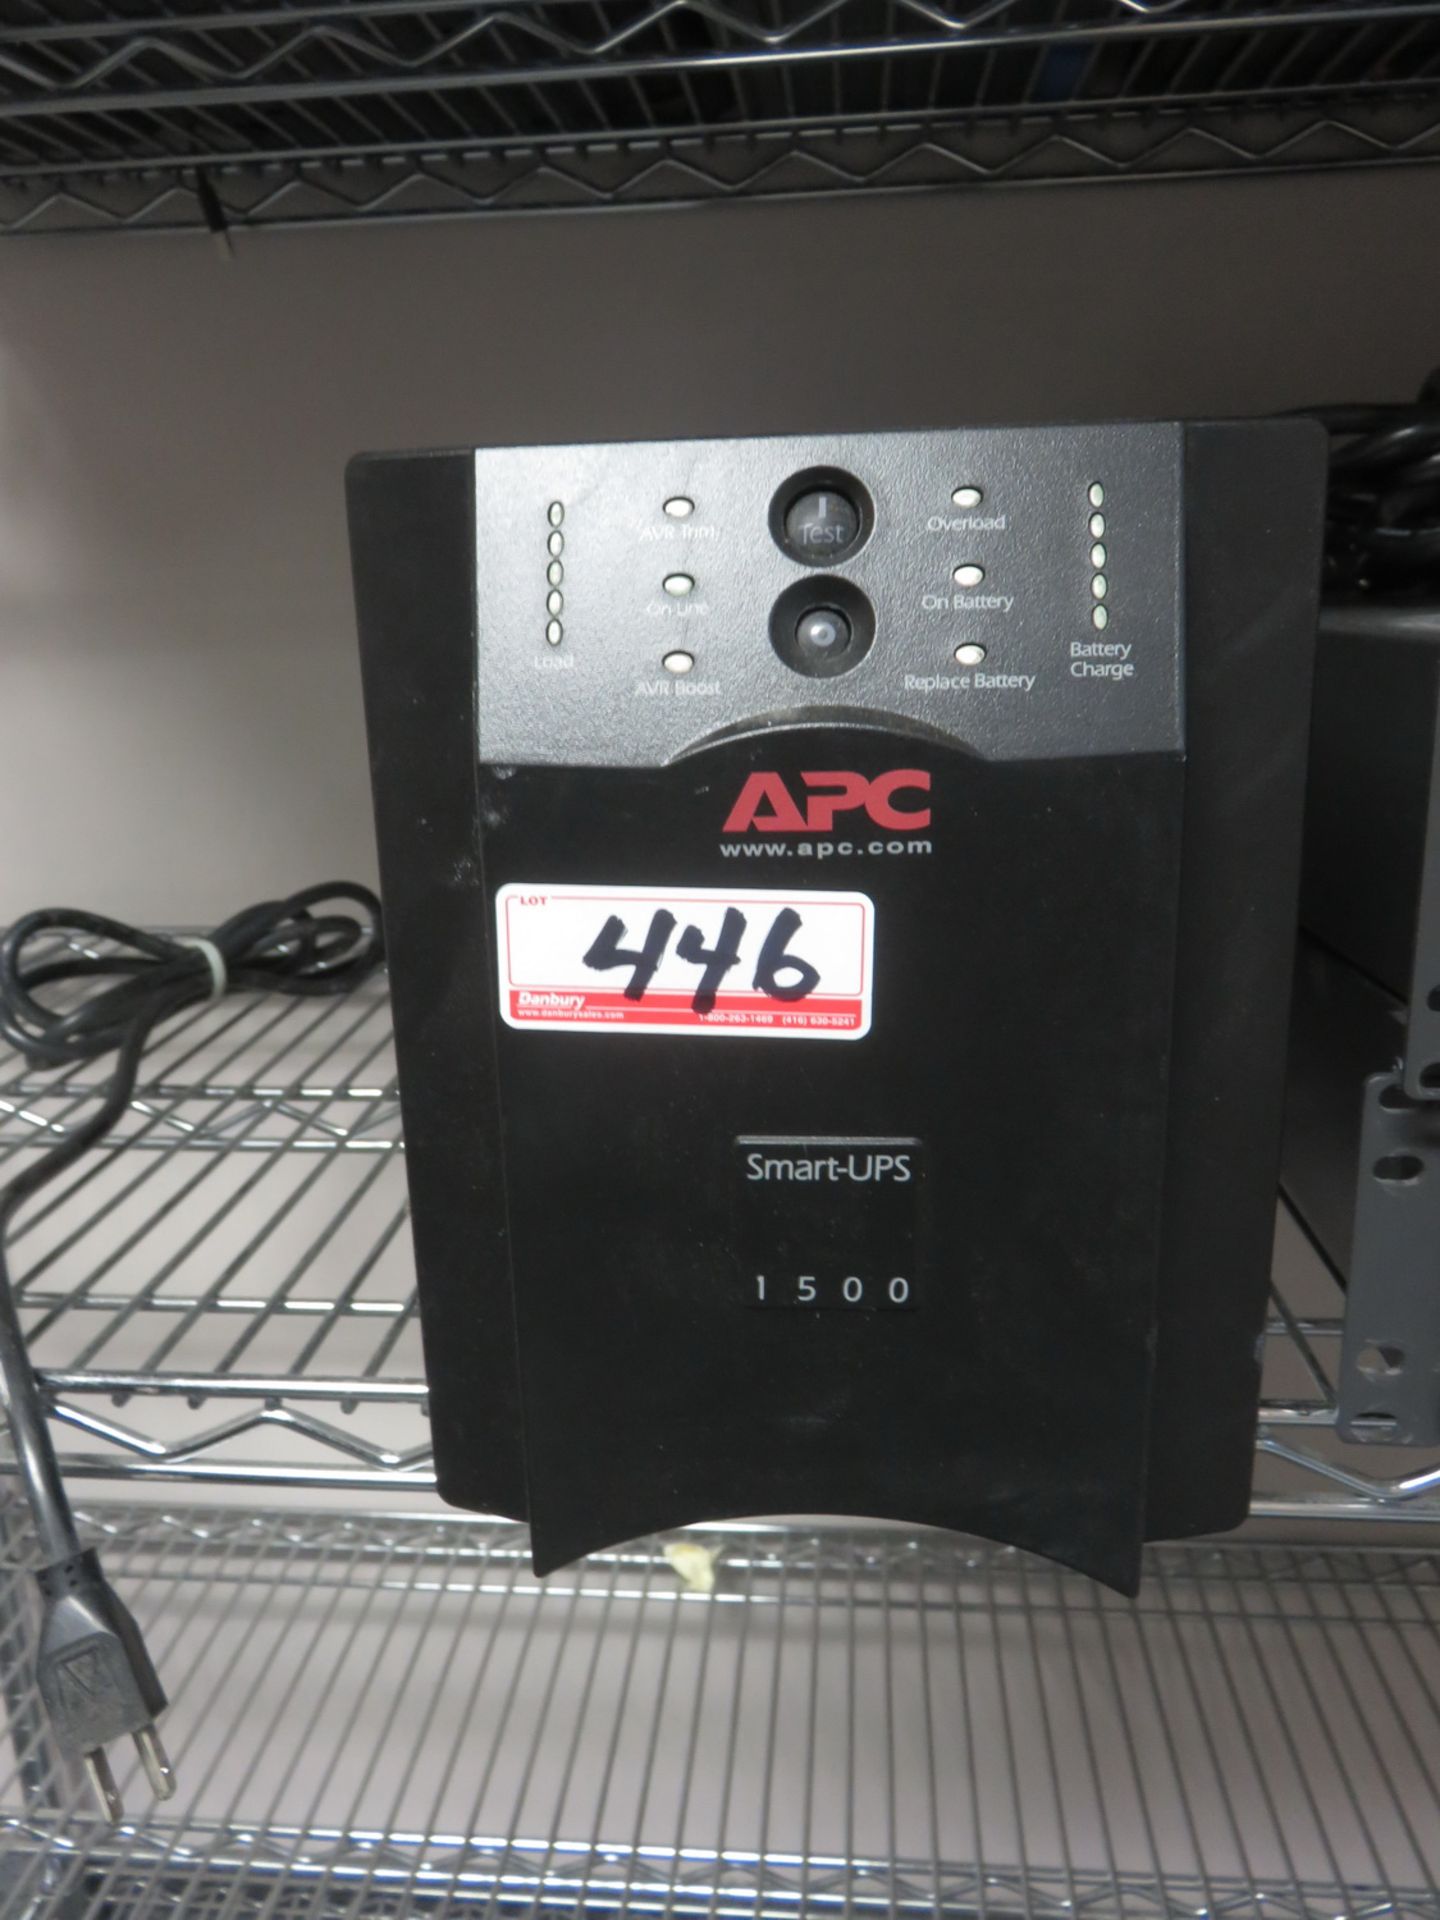 APC 1500 SMART-UPS BATTERY BACKUP